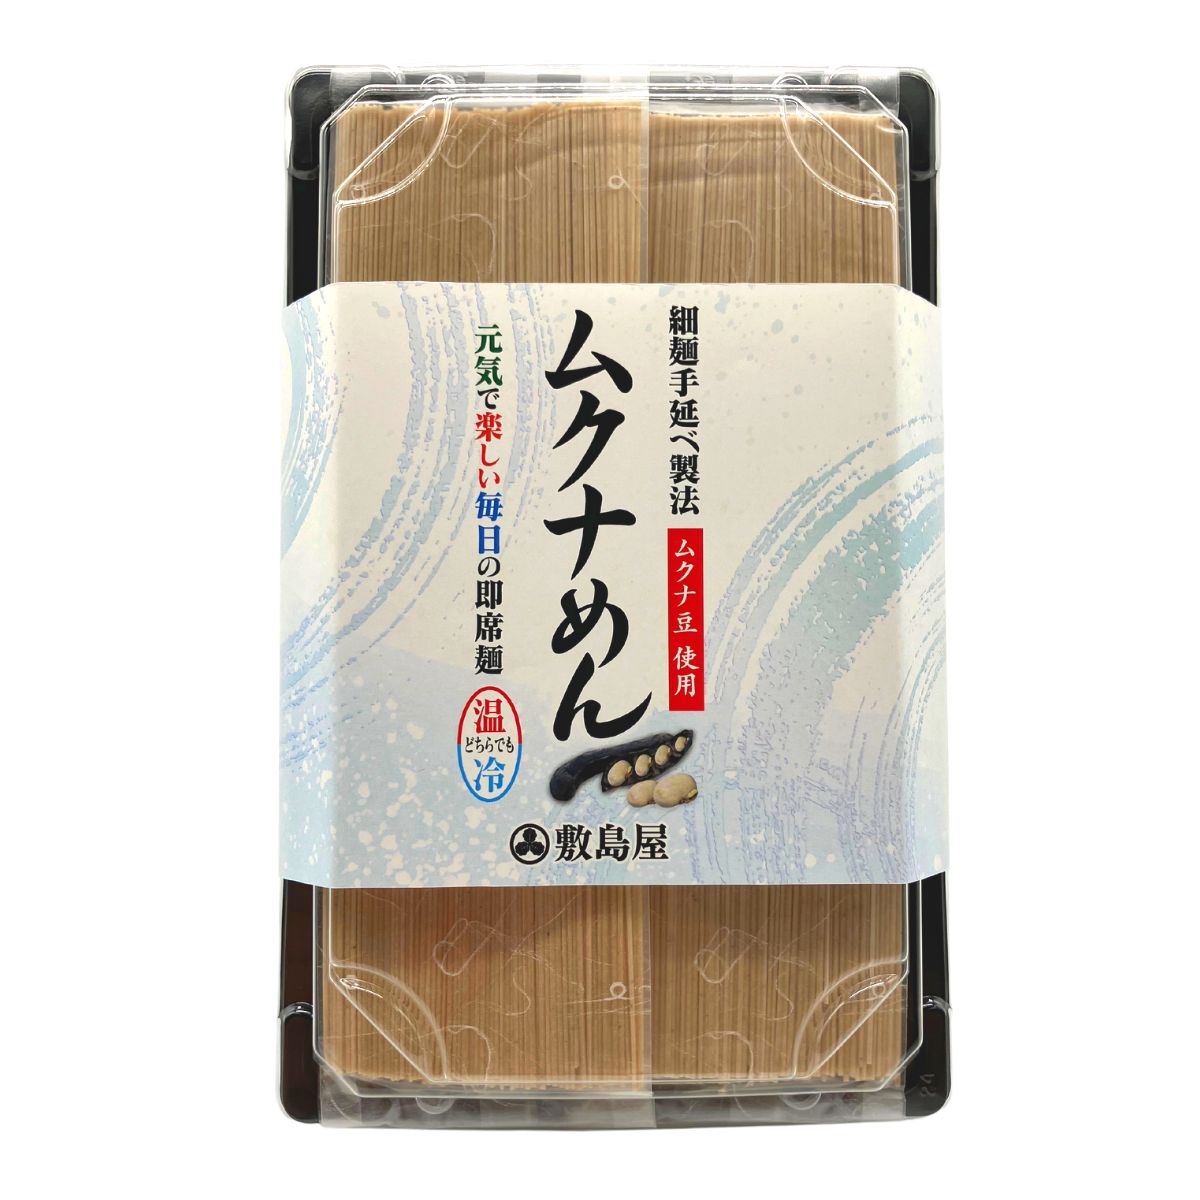 敷島屋のムクナ豆麺